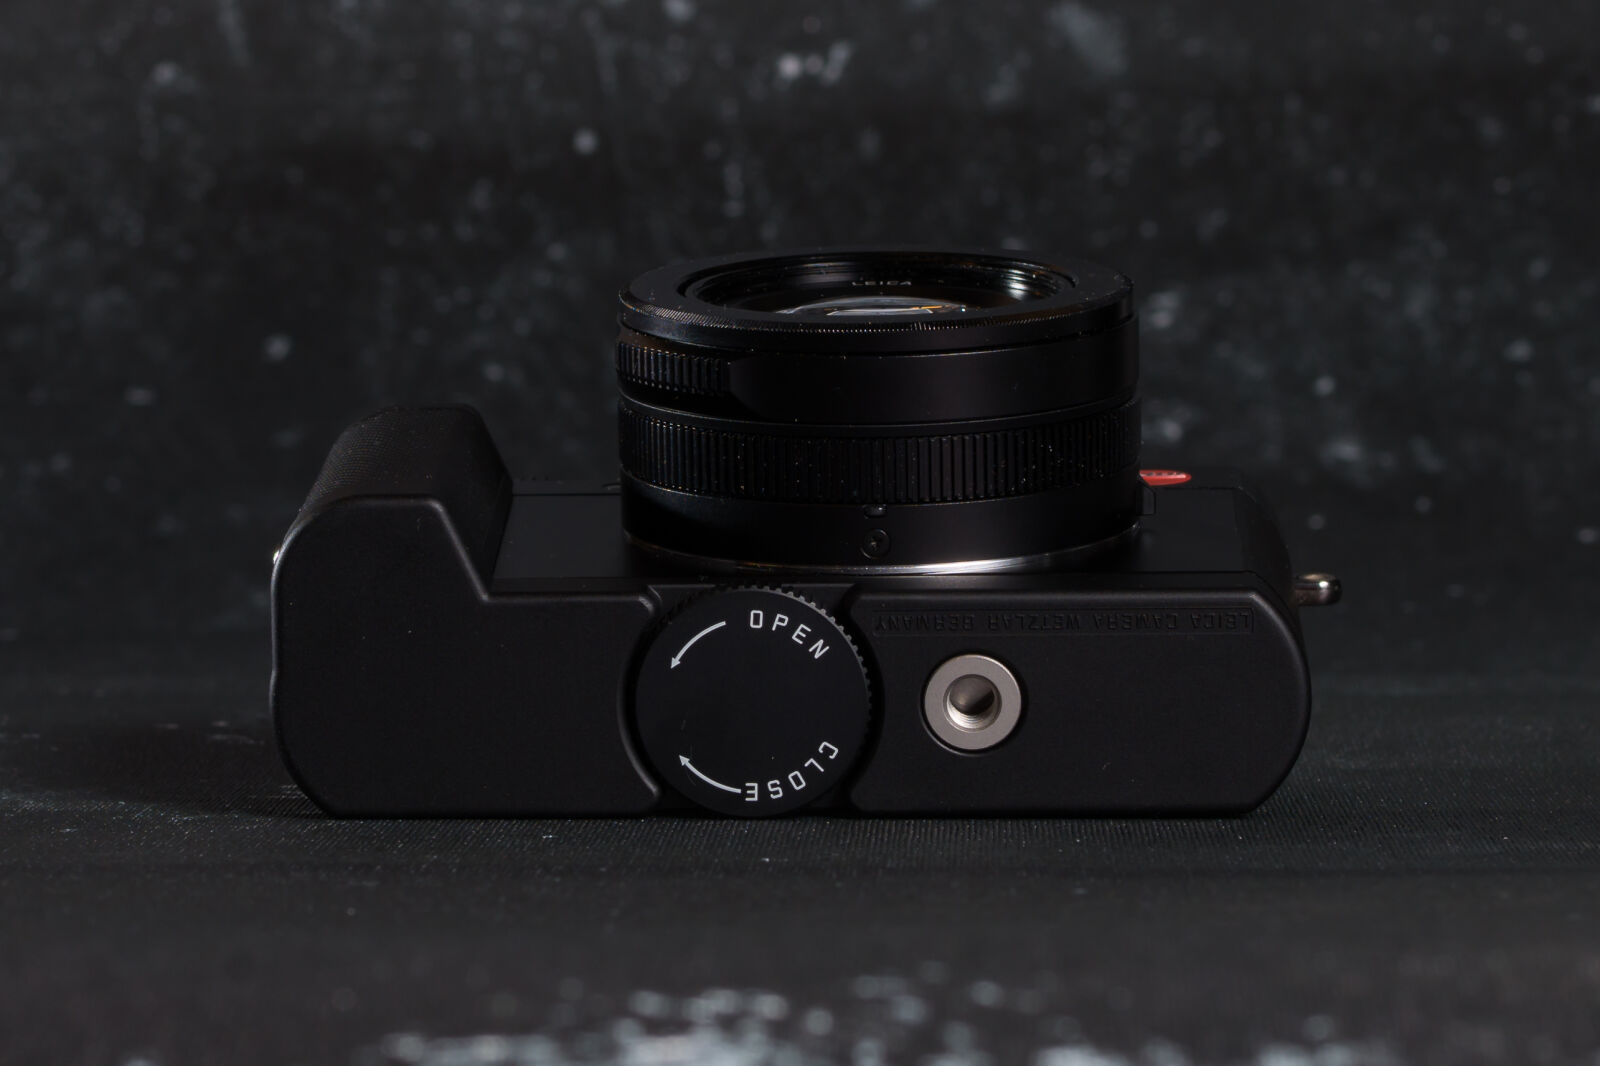 Nikon D800E sample photo. Leica d-lux typ 109 photography